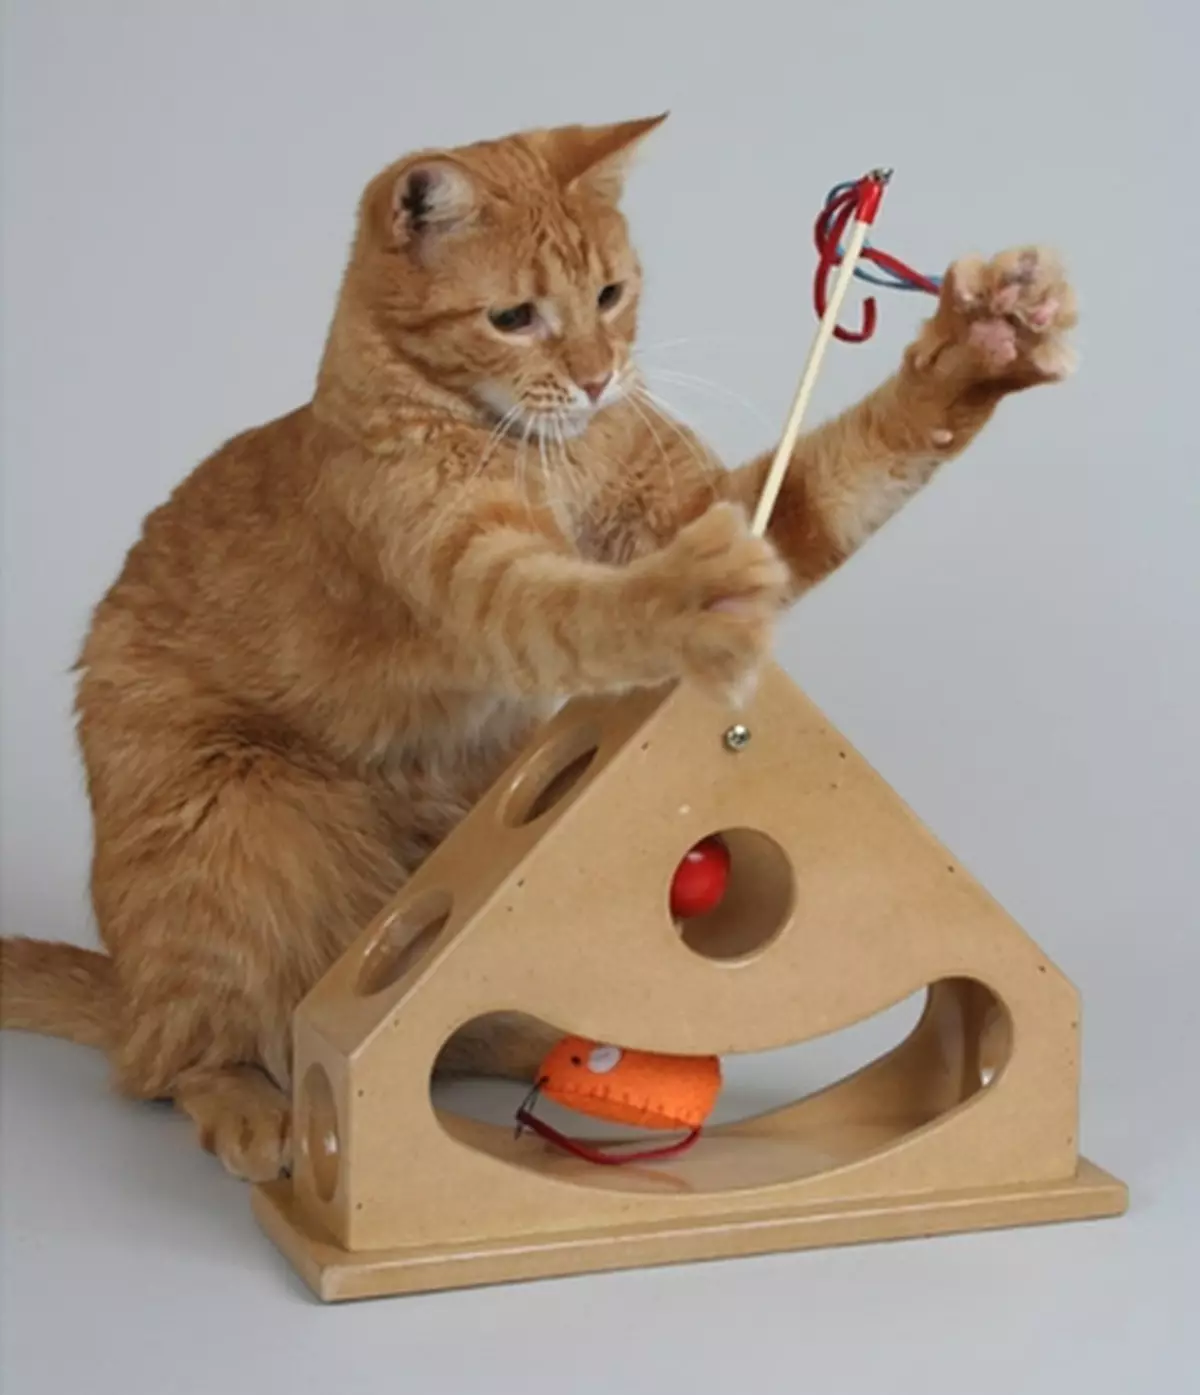 لعب للقطط (59 صور): أفضل ألعاب التفاعلية والذكية للقطط والفئران الإلكترونية وnevoshai للقطط، دائرة مع الكرة واللعب مع حساسية داخل 11931_23